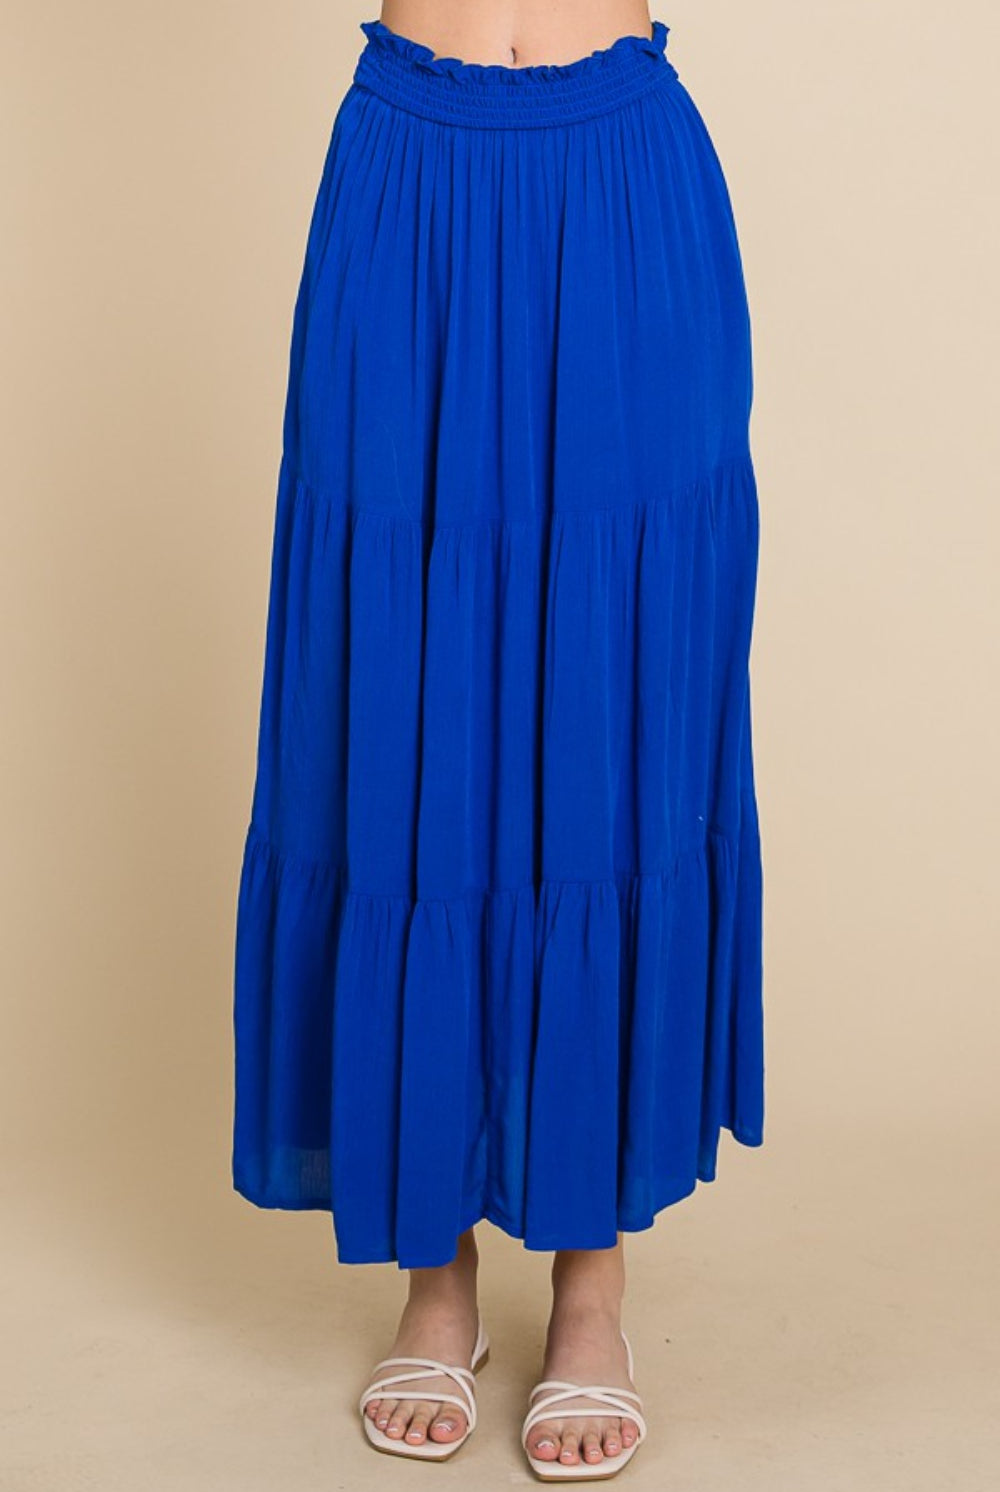 Midnight Blue Beach Walk Full Size Frill Ruched Midi Skirt Maxi Skirt